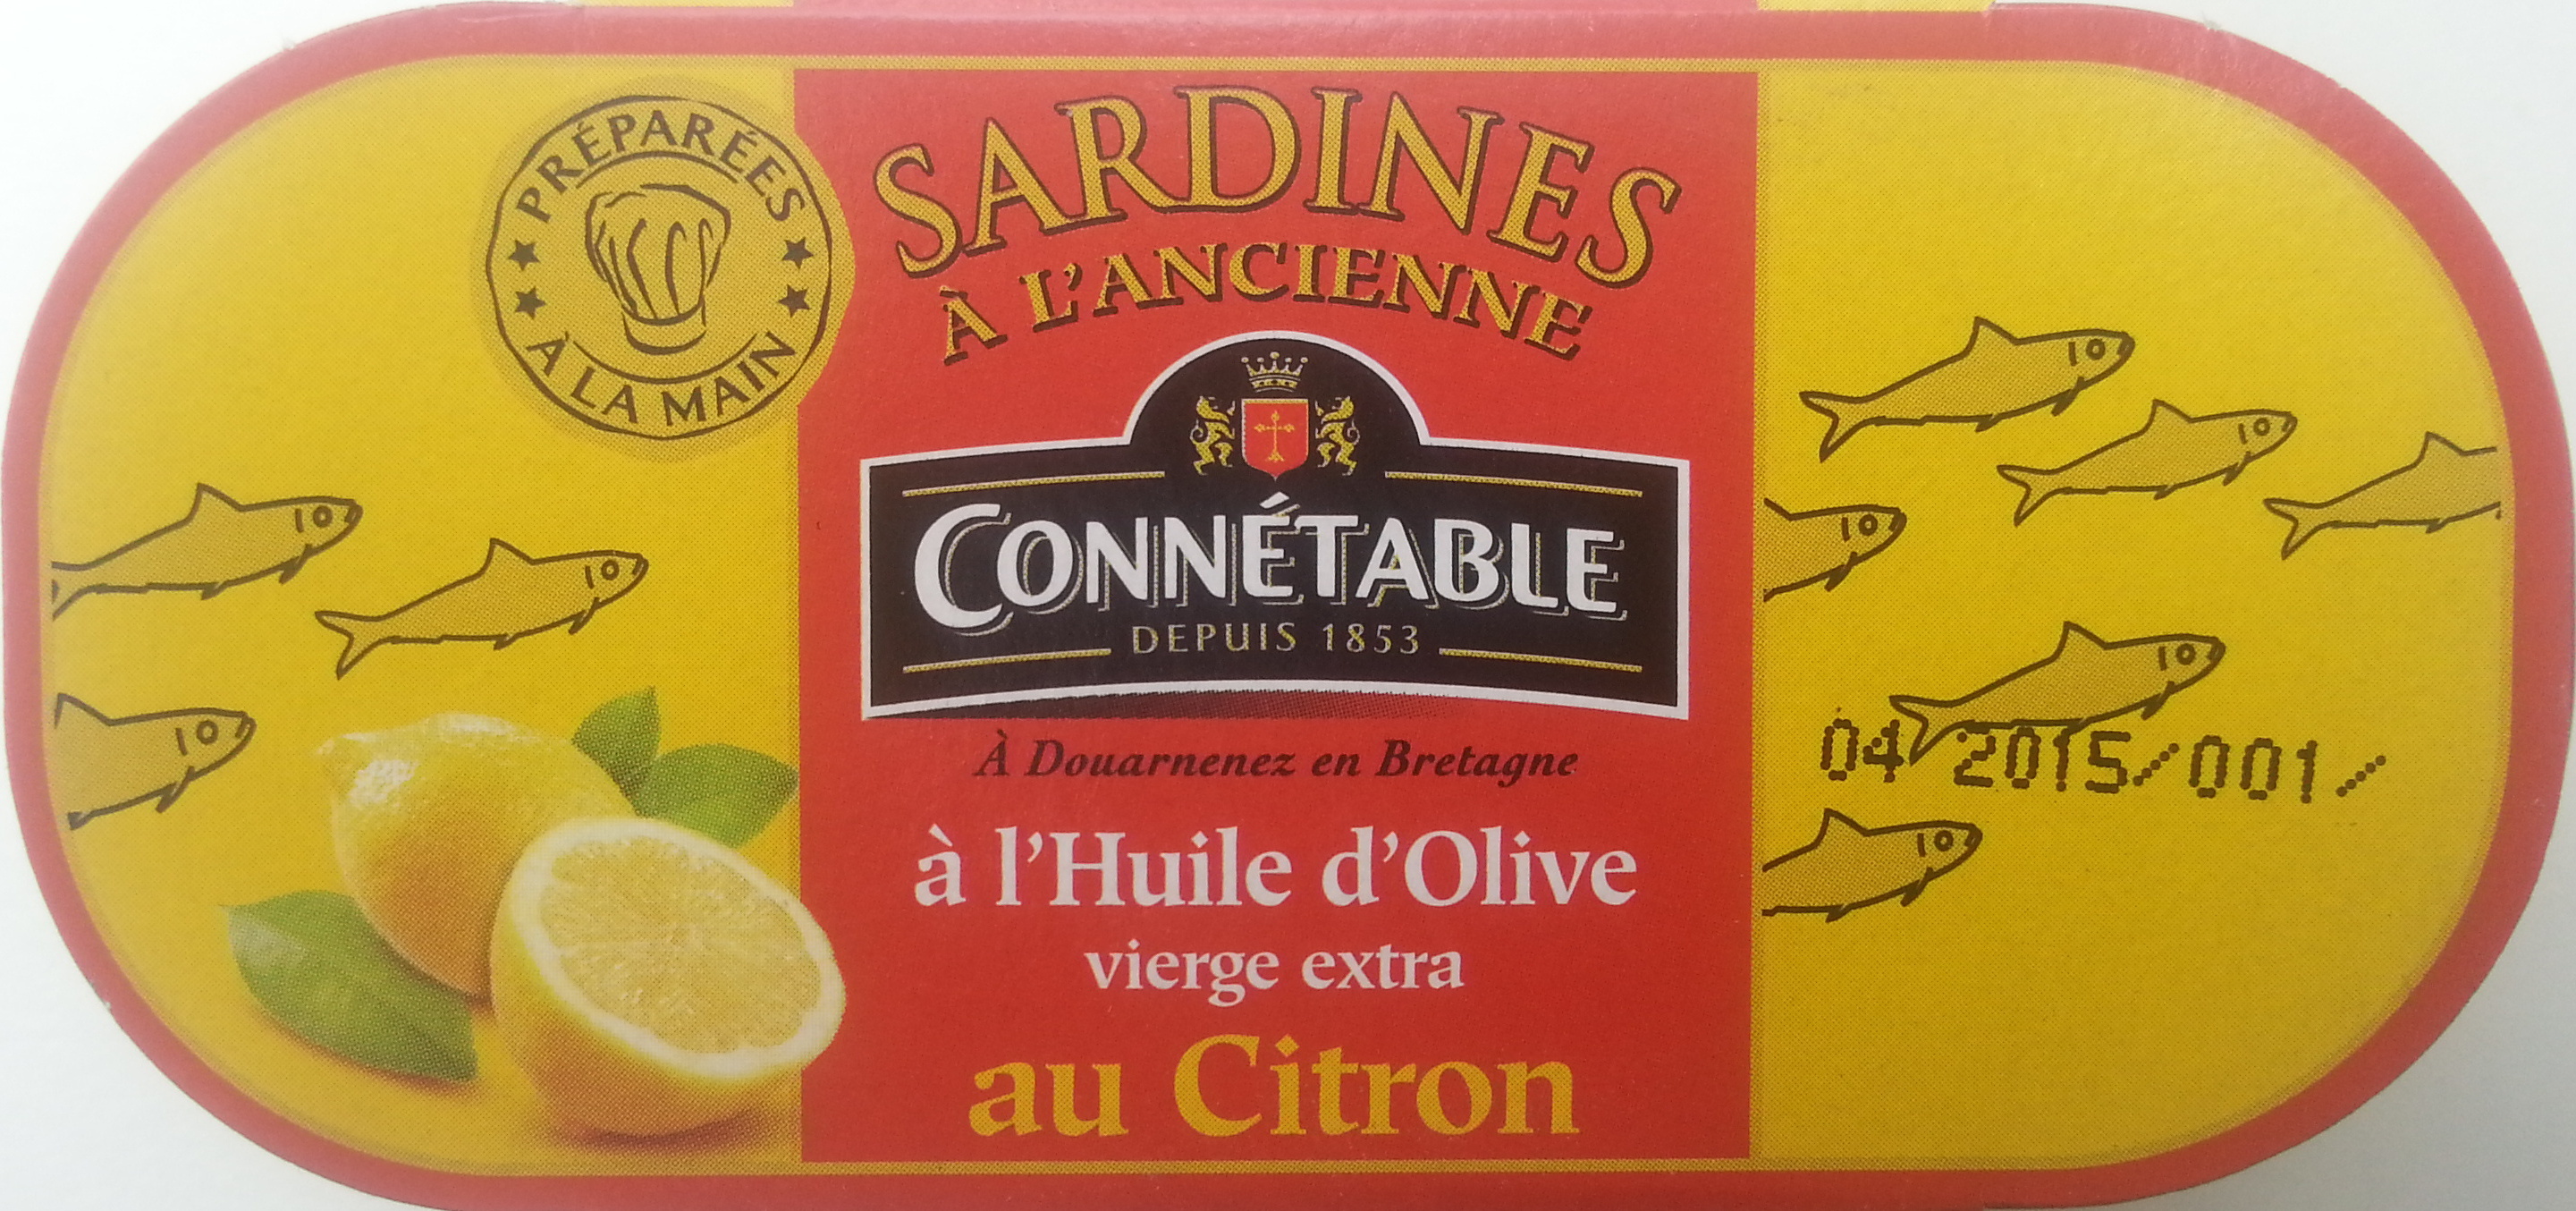 Sardines à l'Ancienne à l'Huile d'Olive vierge extra au Citron - Produit - fr